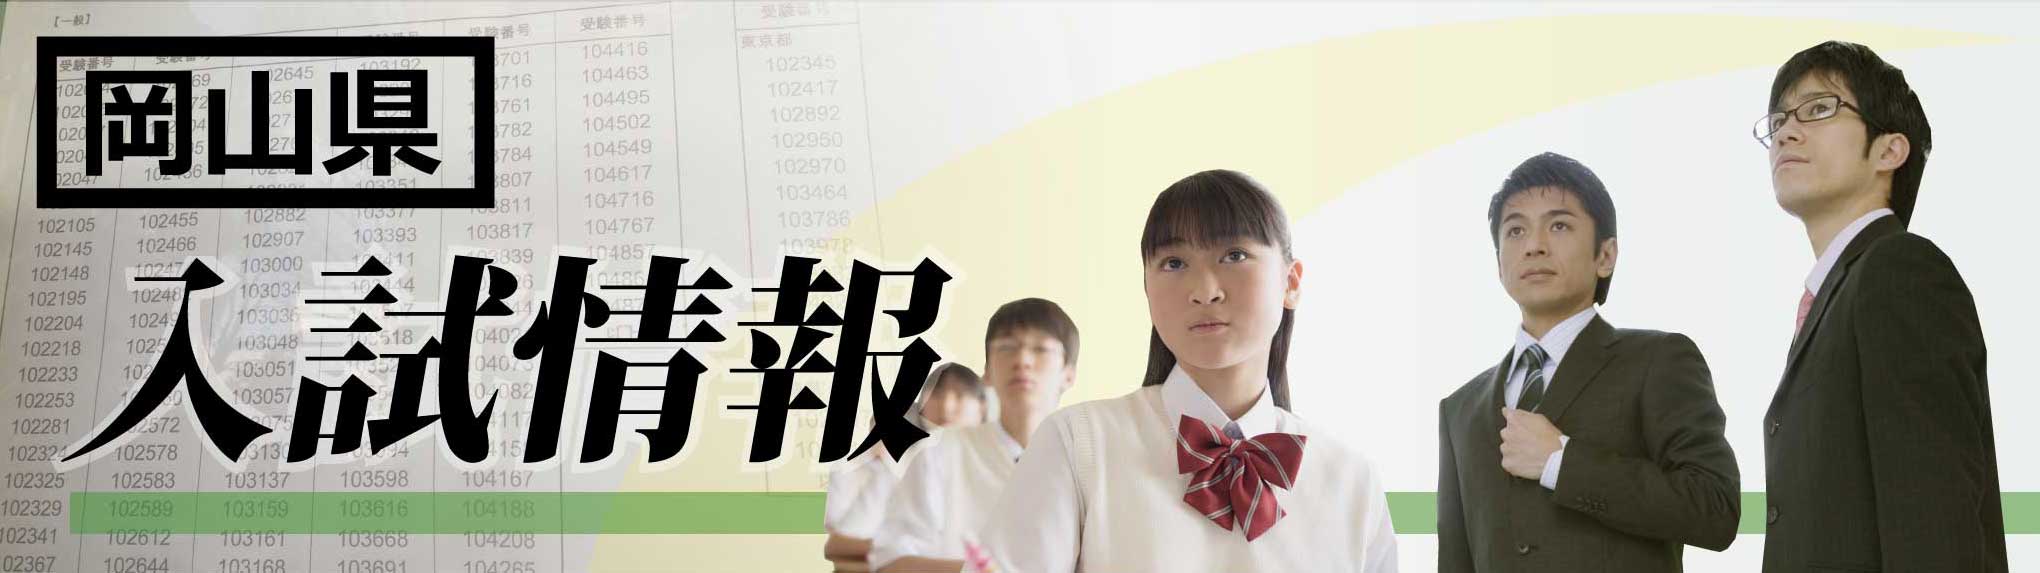 岡山県 高校入試19 ボーダーライン 偏差値 家庭教師のagent